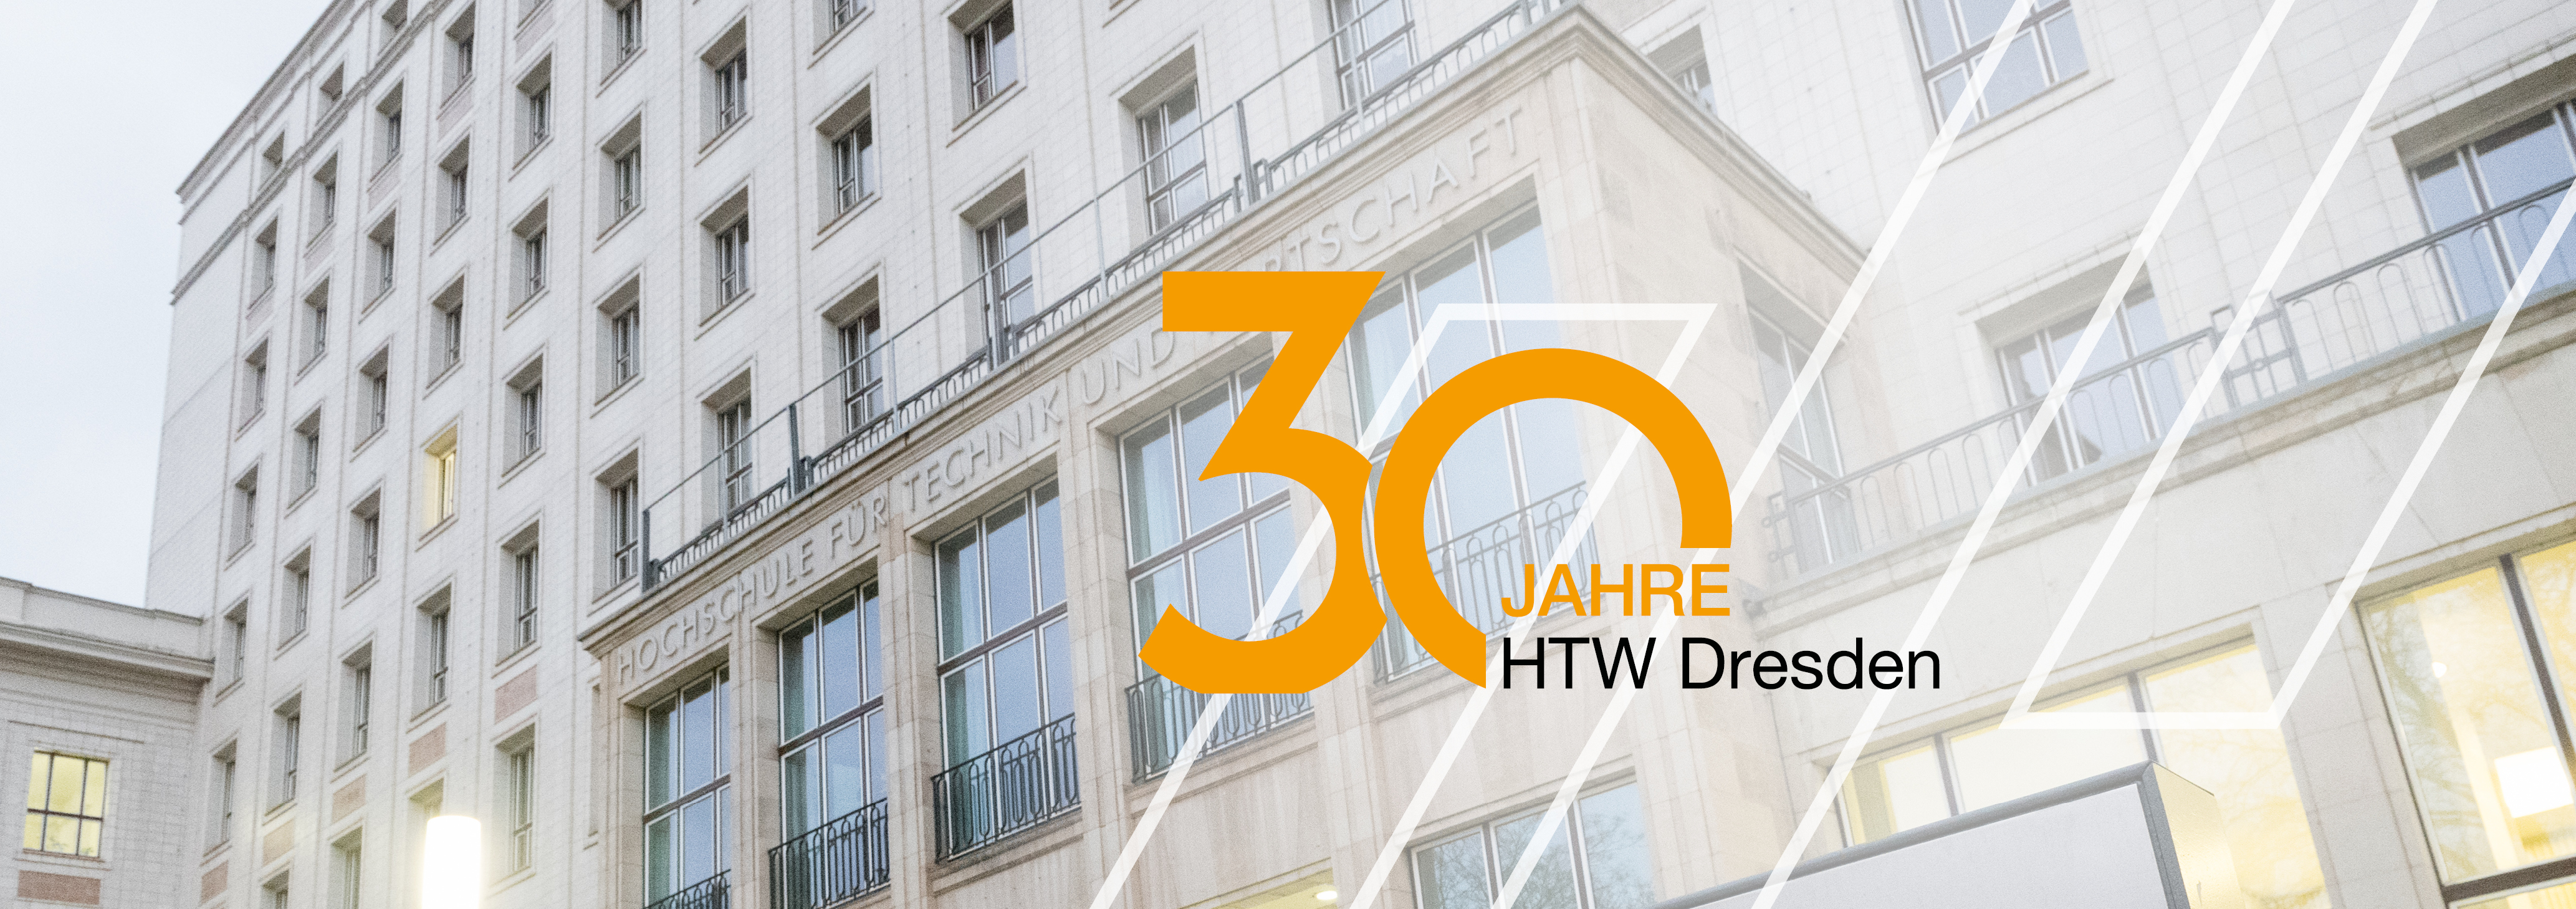 Das Hauptgebäude der HTW Dresden mit dem Signet 30 Jahre